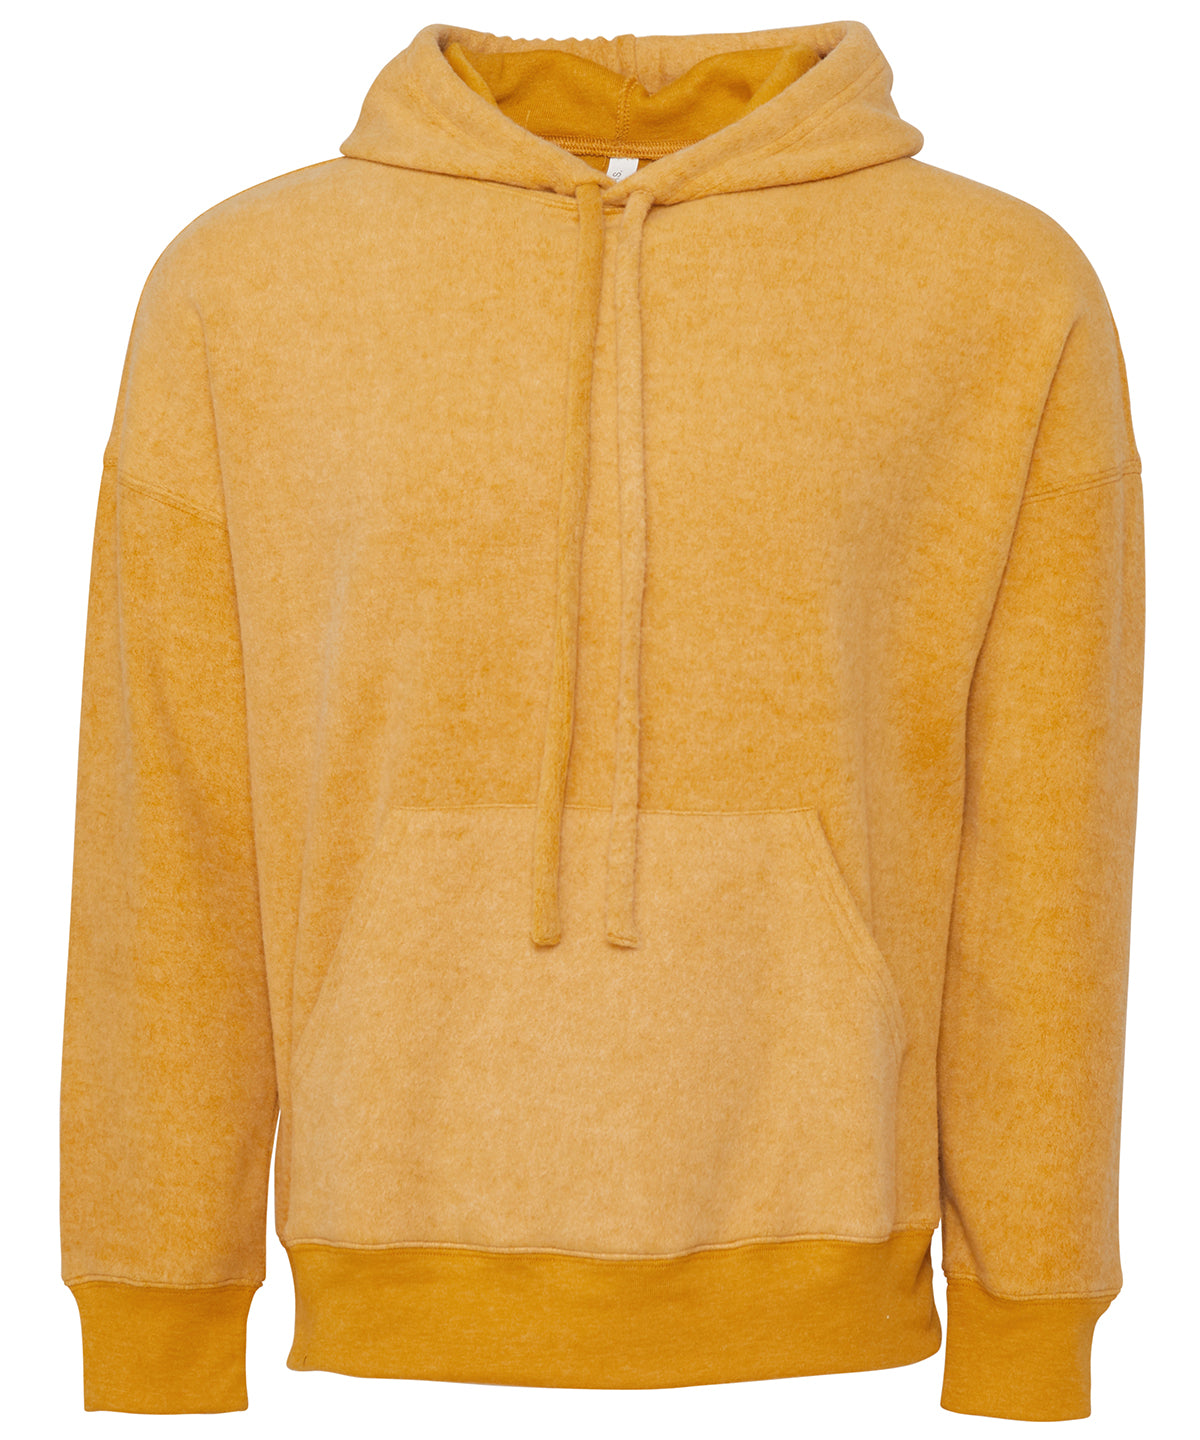 Personalised Hoodies - Heather Grey Bella Canvas Unisex sueded fleece pullover hoodie